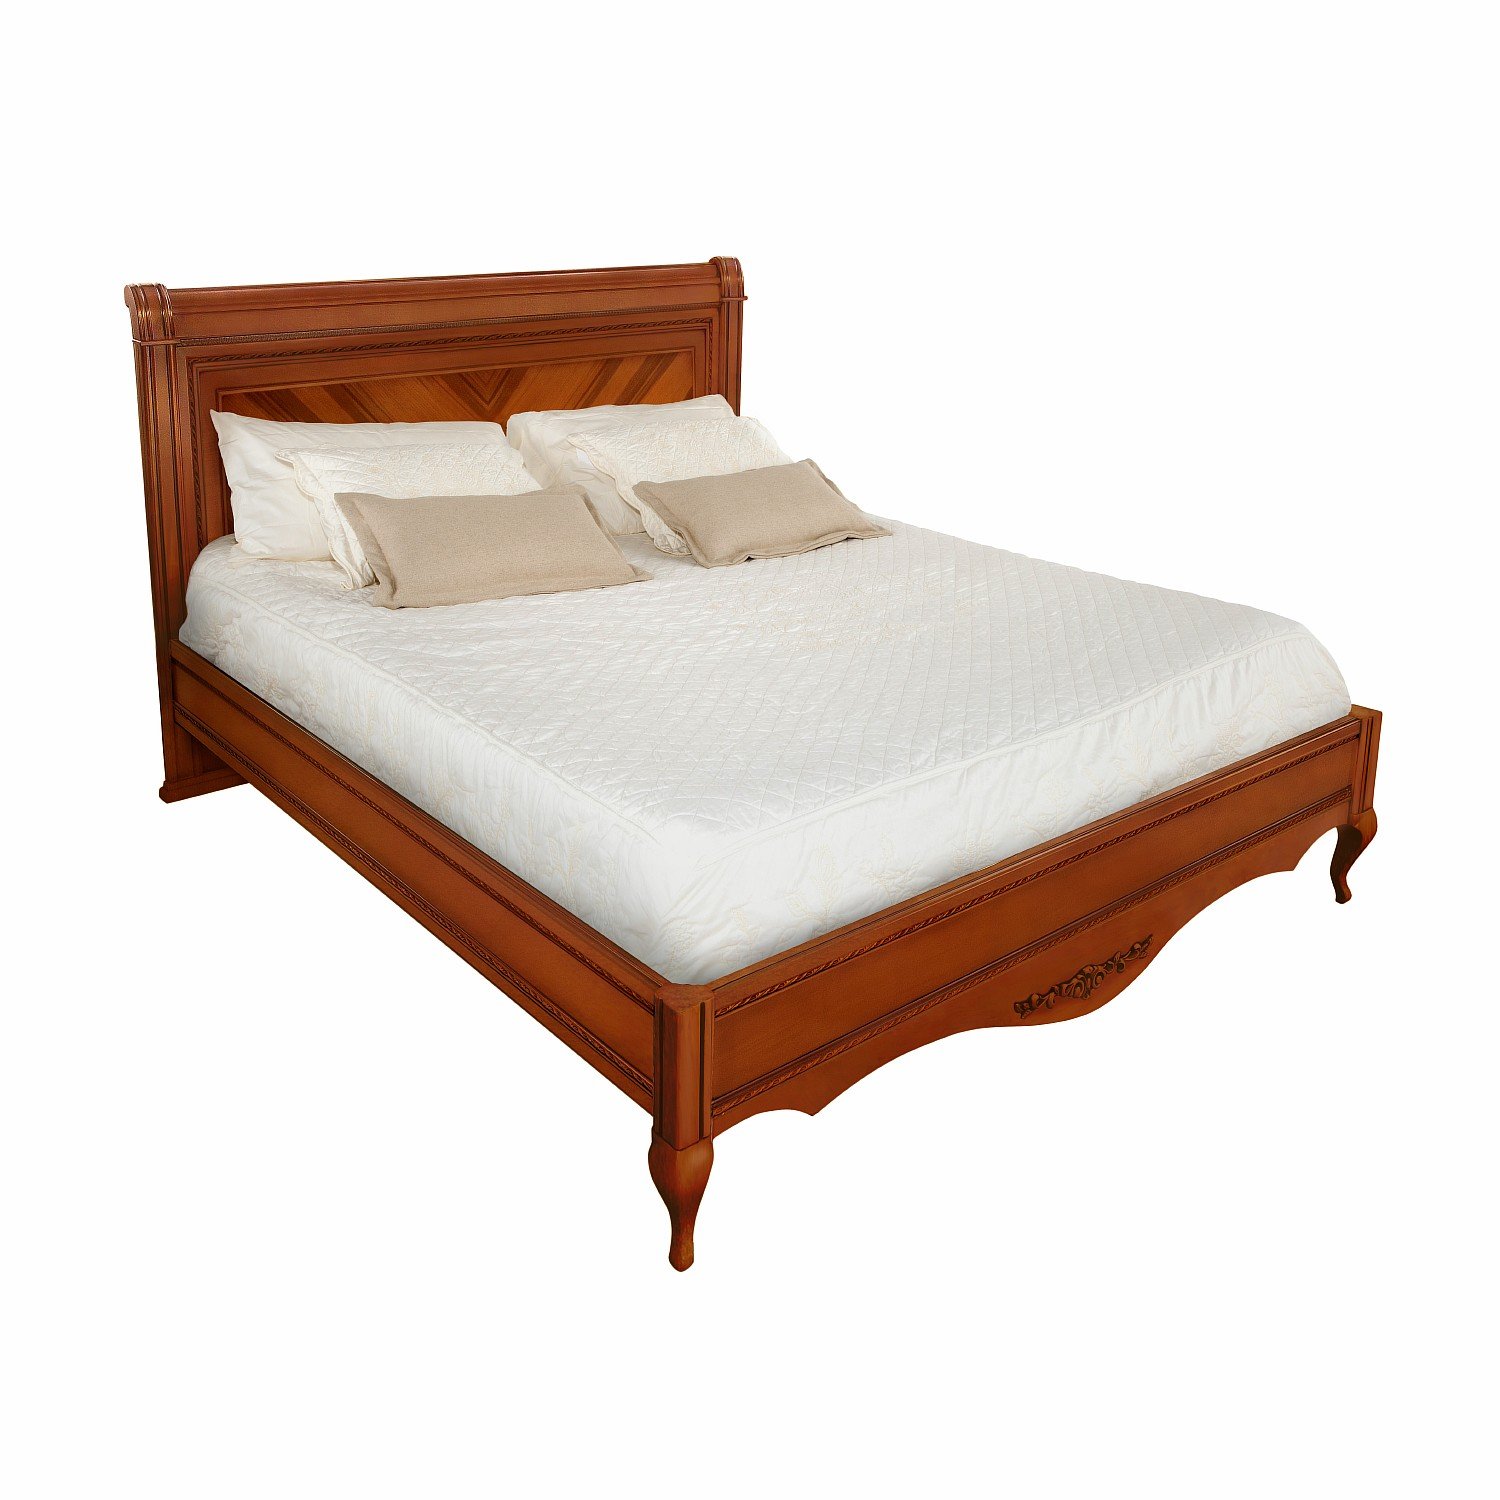 Кровать Timber Неаполь, двуспальная 160x200 см, цвет: янтарь (Т-536/Y)Т-536